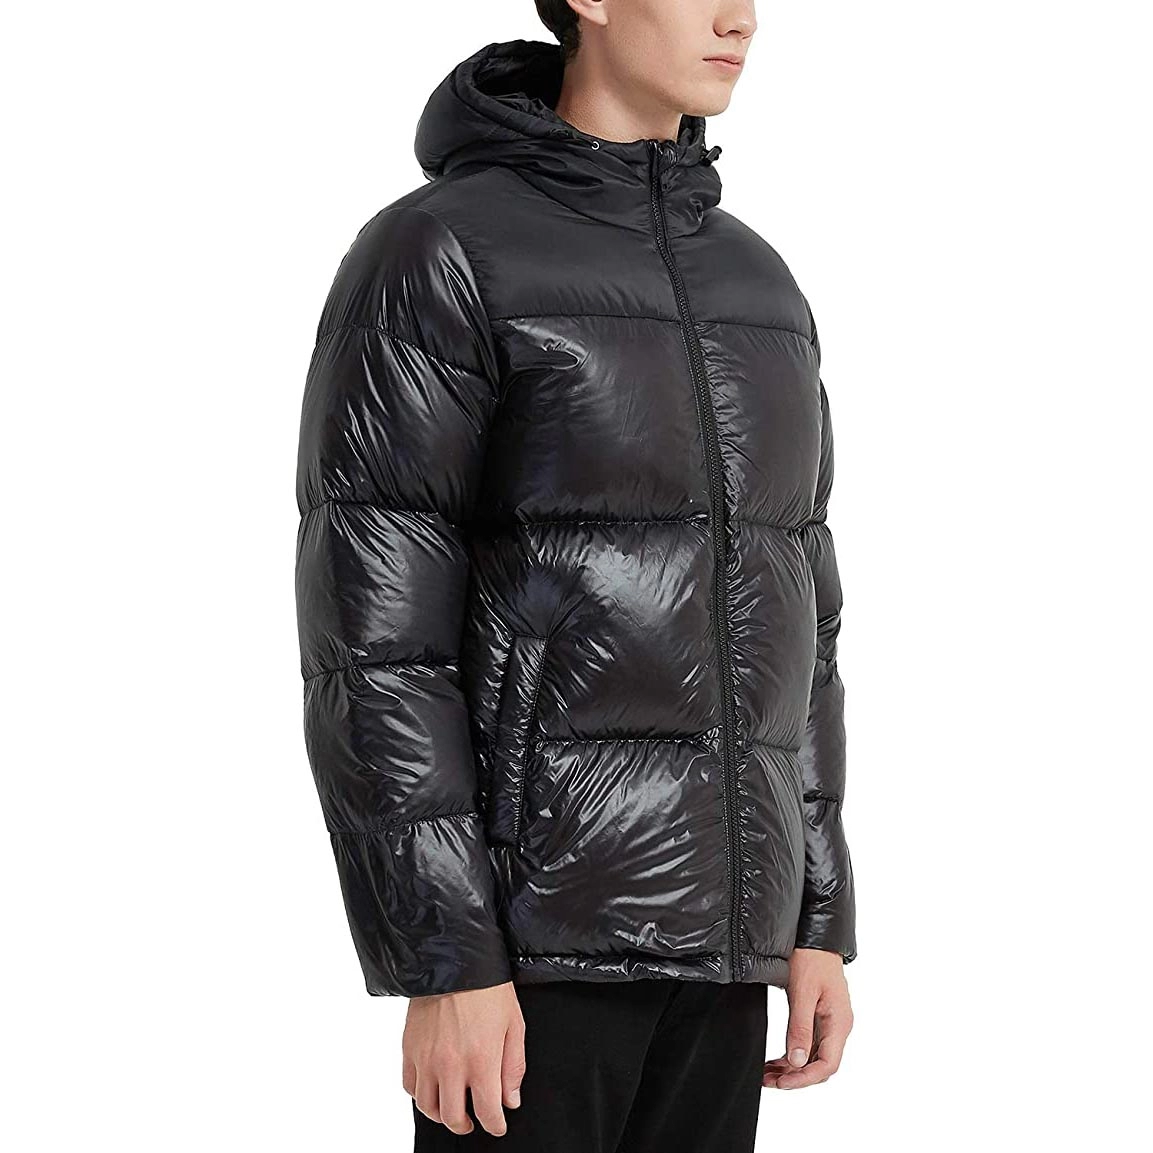 Ανδρικό μπουφάν με κουκούλα ελαφρύ αδιάβροχο χειμερινό παλτό με δυνατότητα συσκευασίας